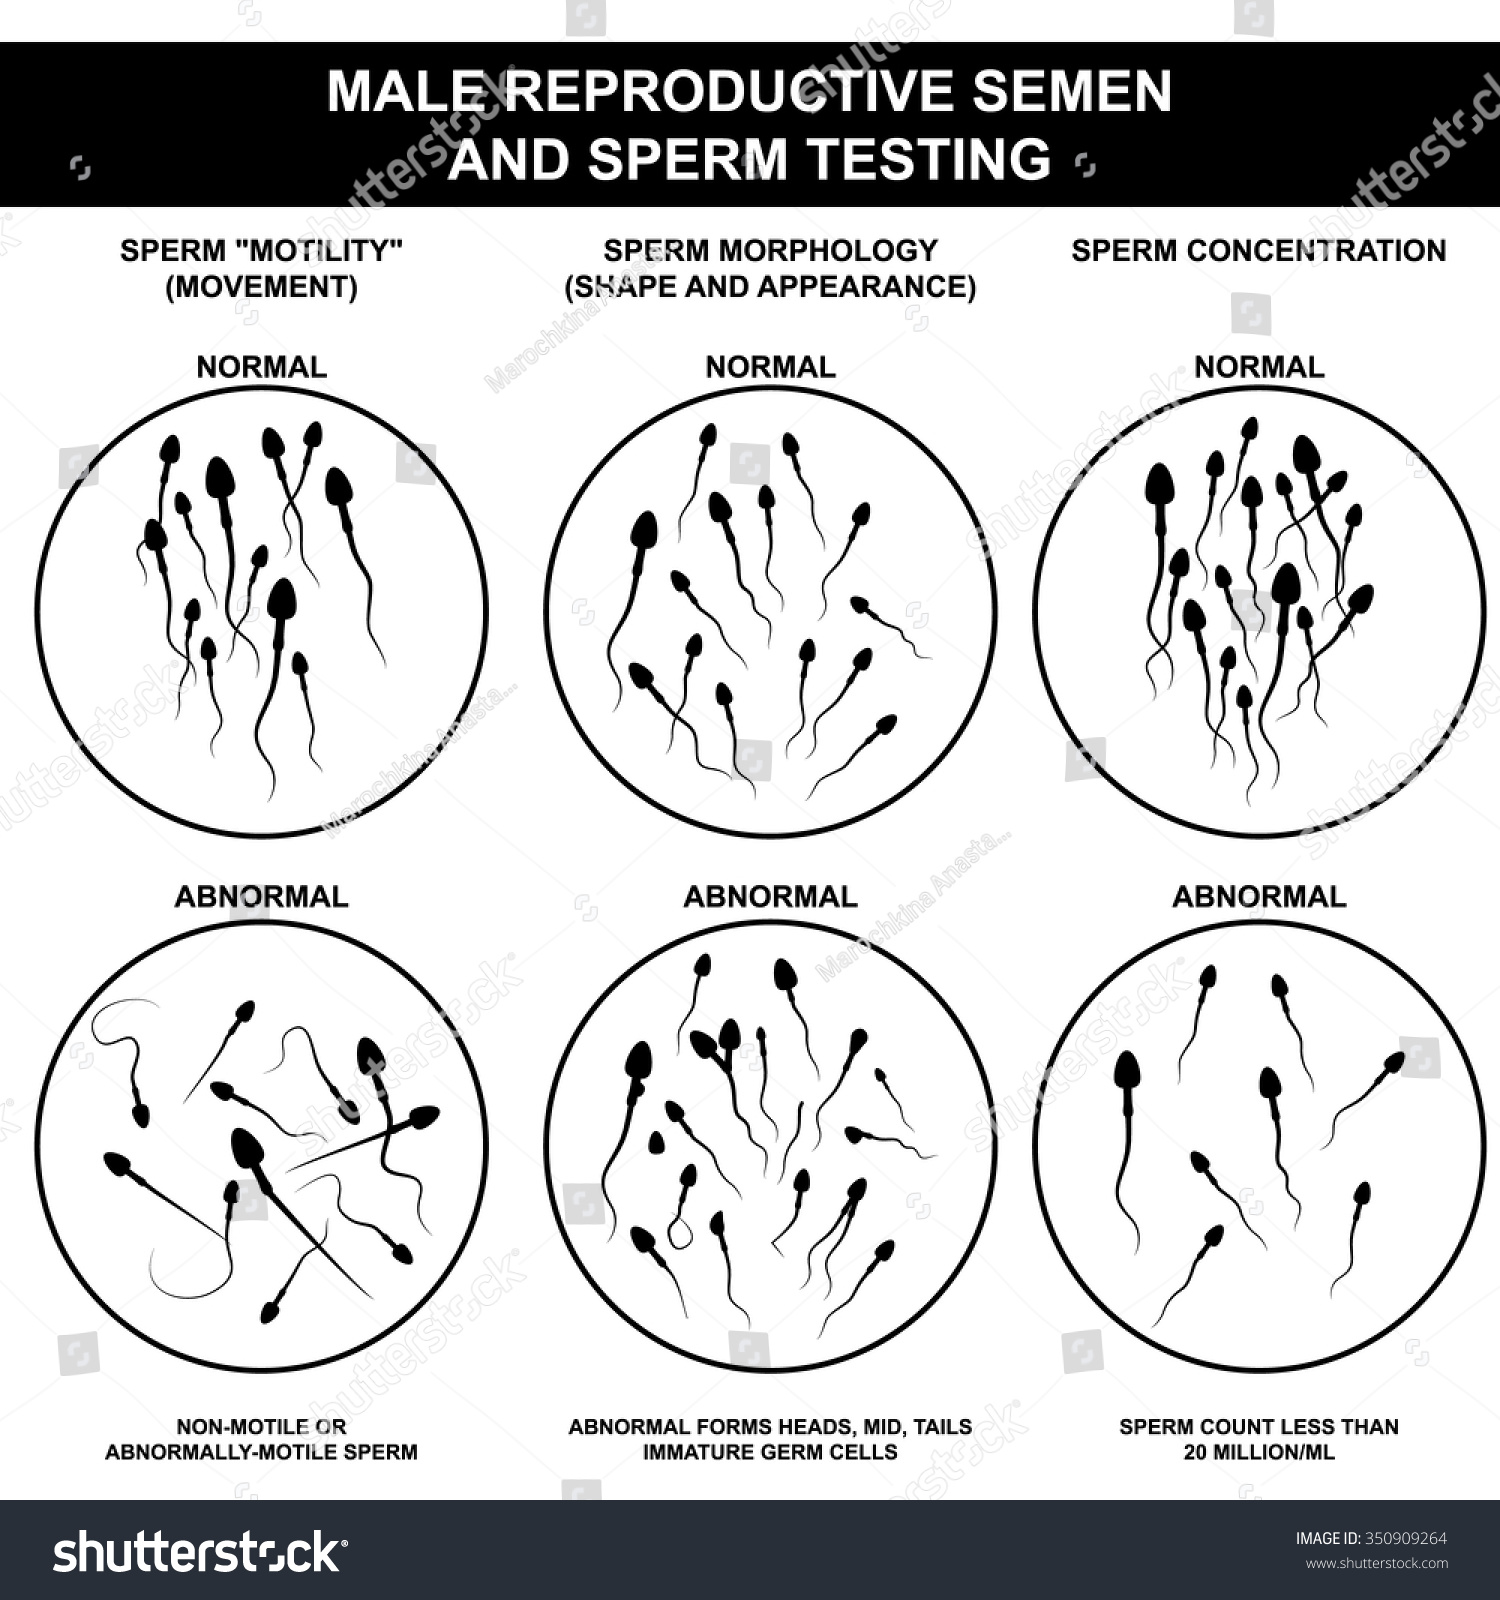 как можно увеличить объем спермы фото 9